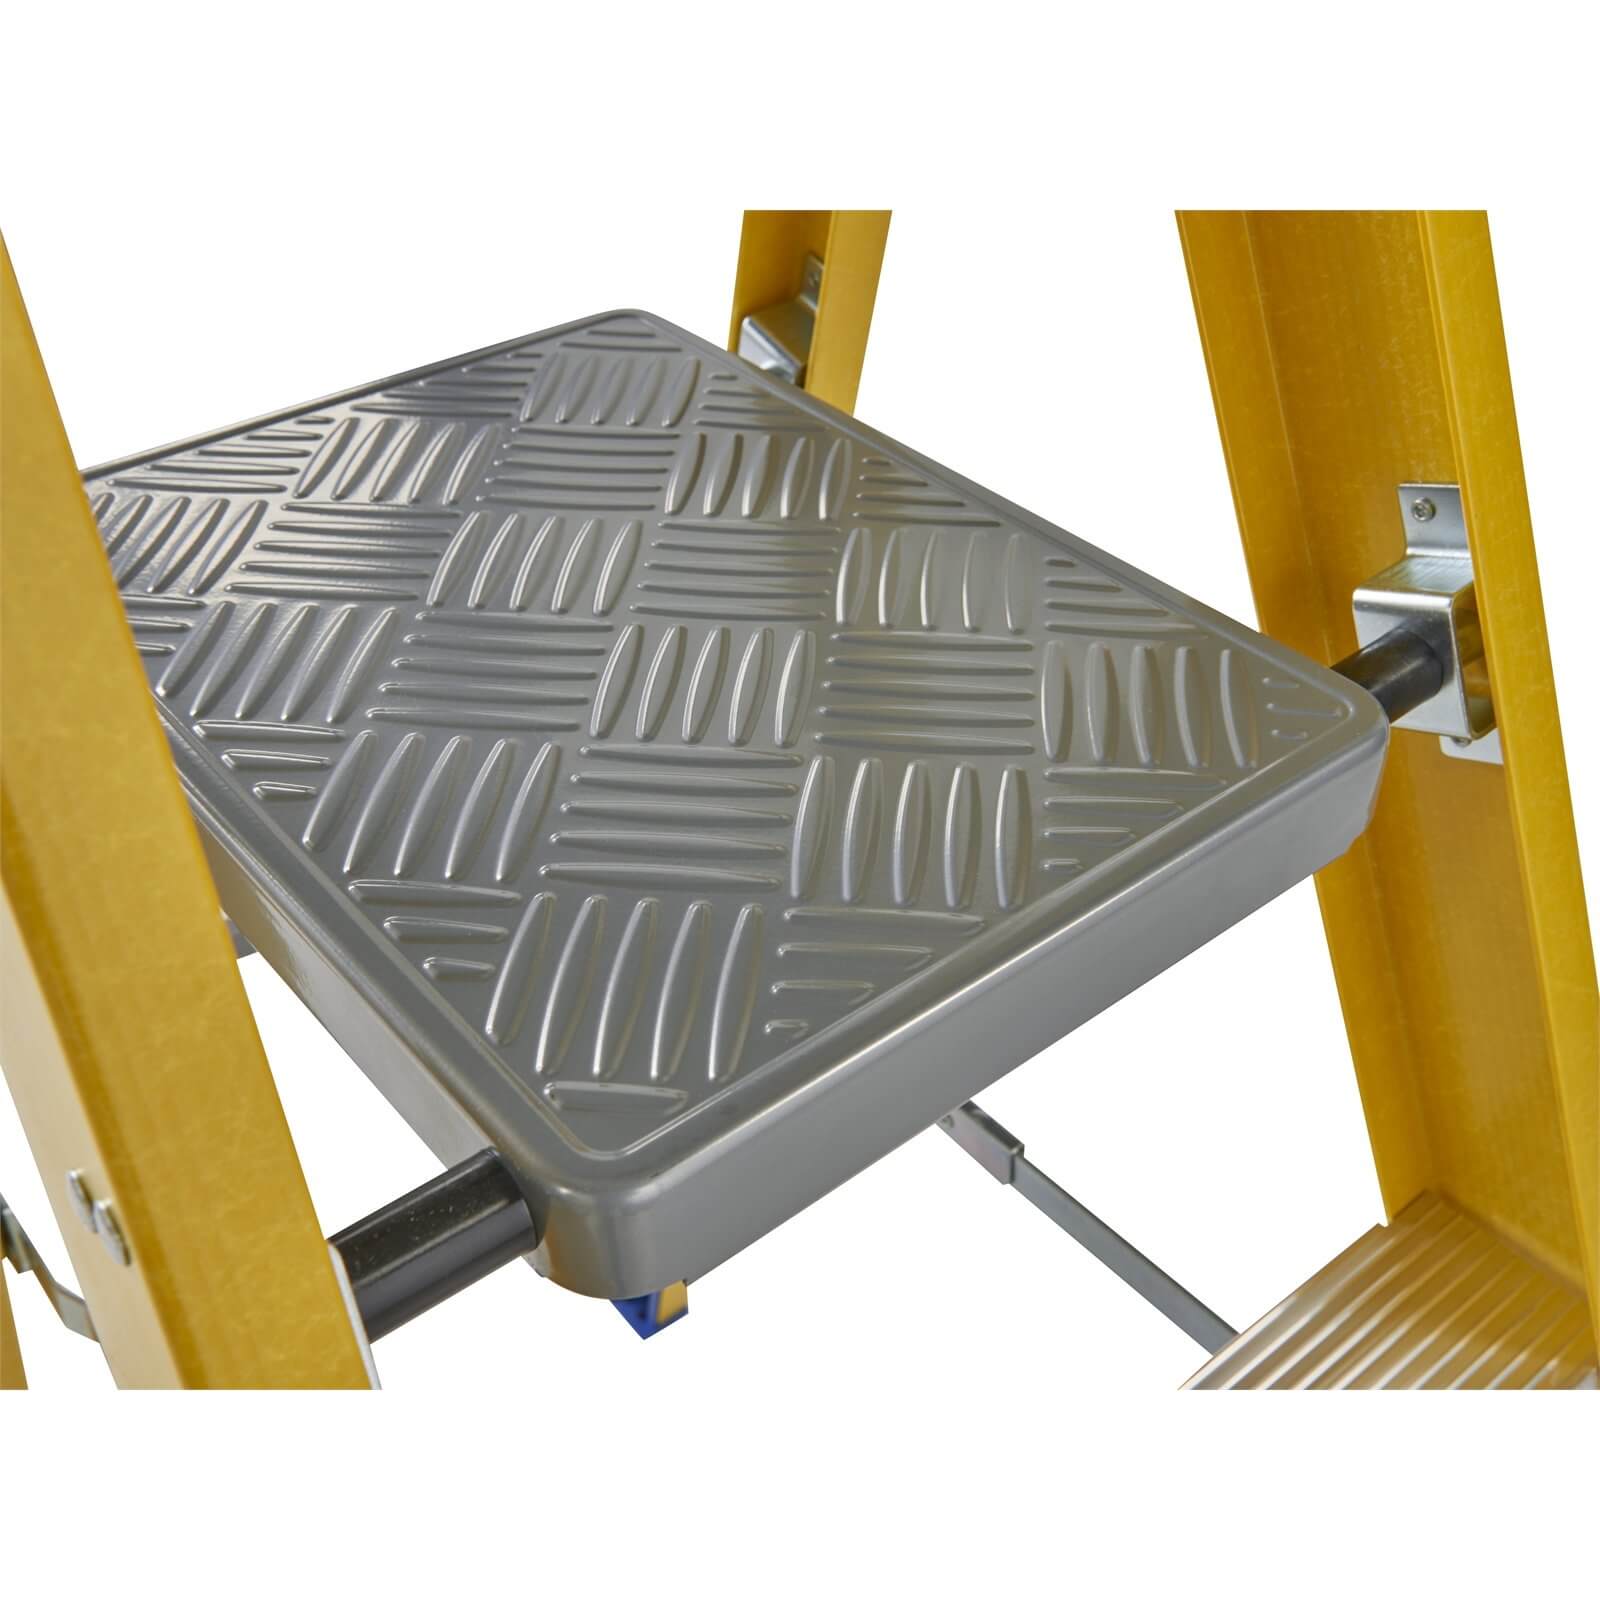 Werner Fibreglass Platform Step Ladder - 5 Tread